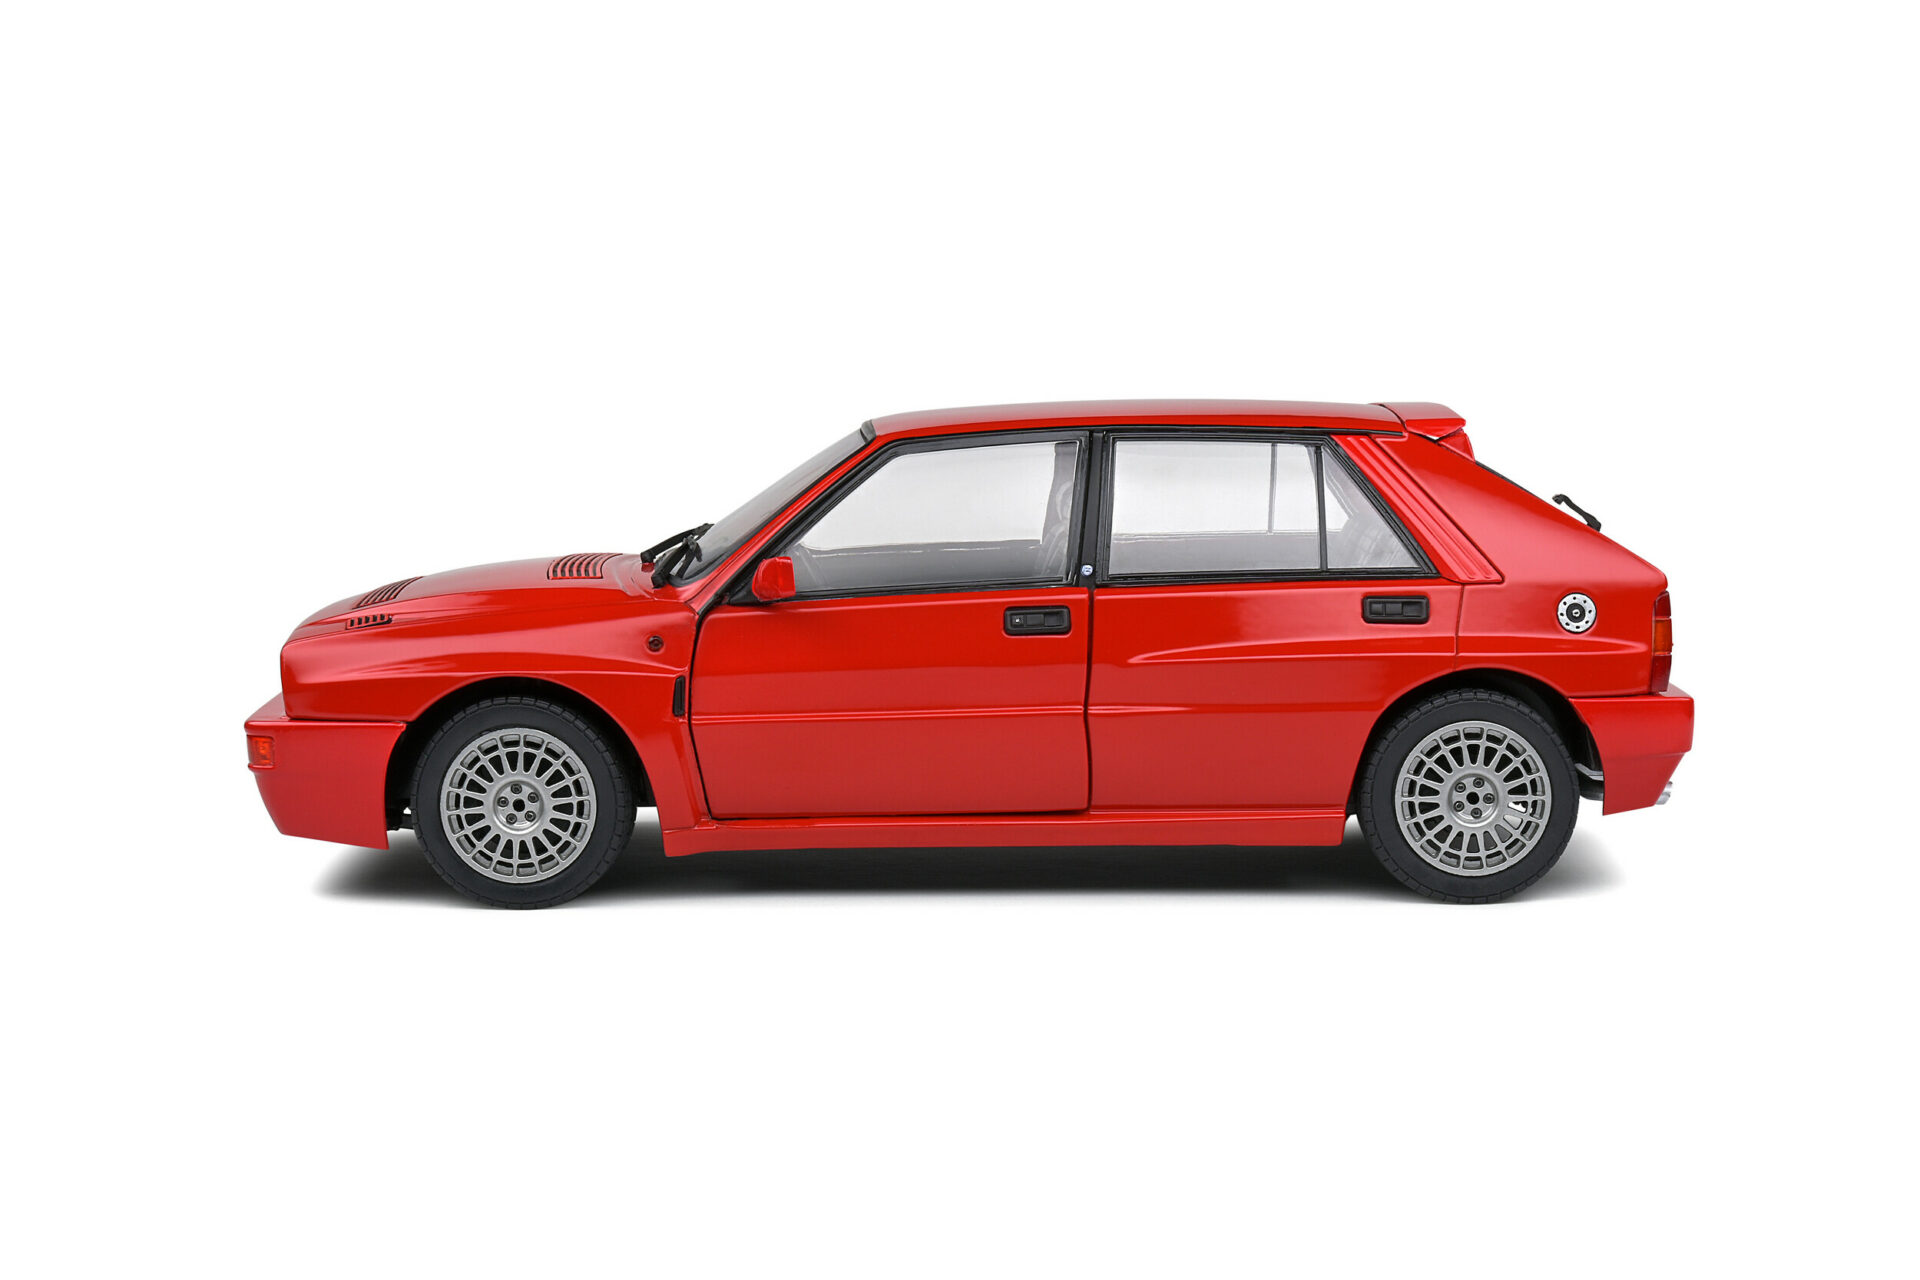 Solido S1807801 Lancia Delta Integrale HF Rosso Corsa 1991 Diecast Model Car